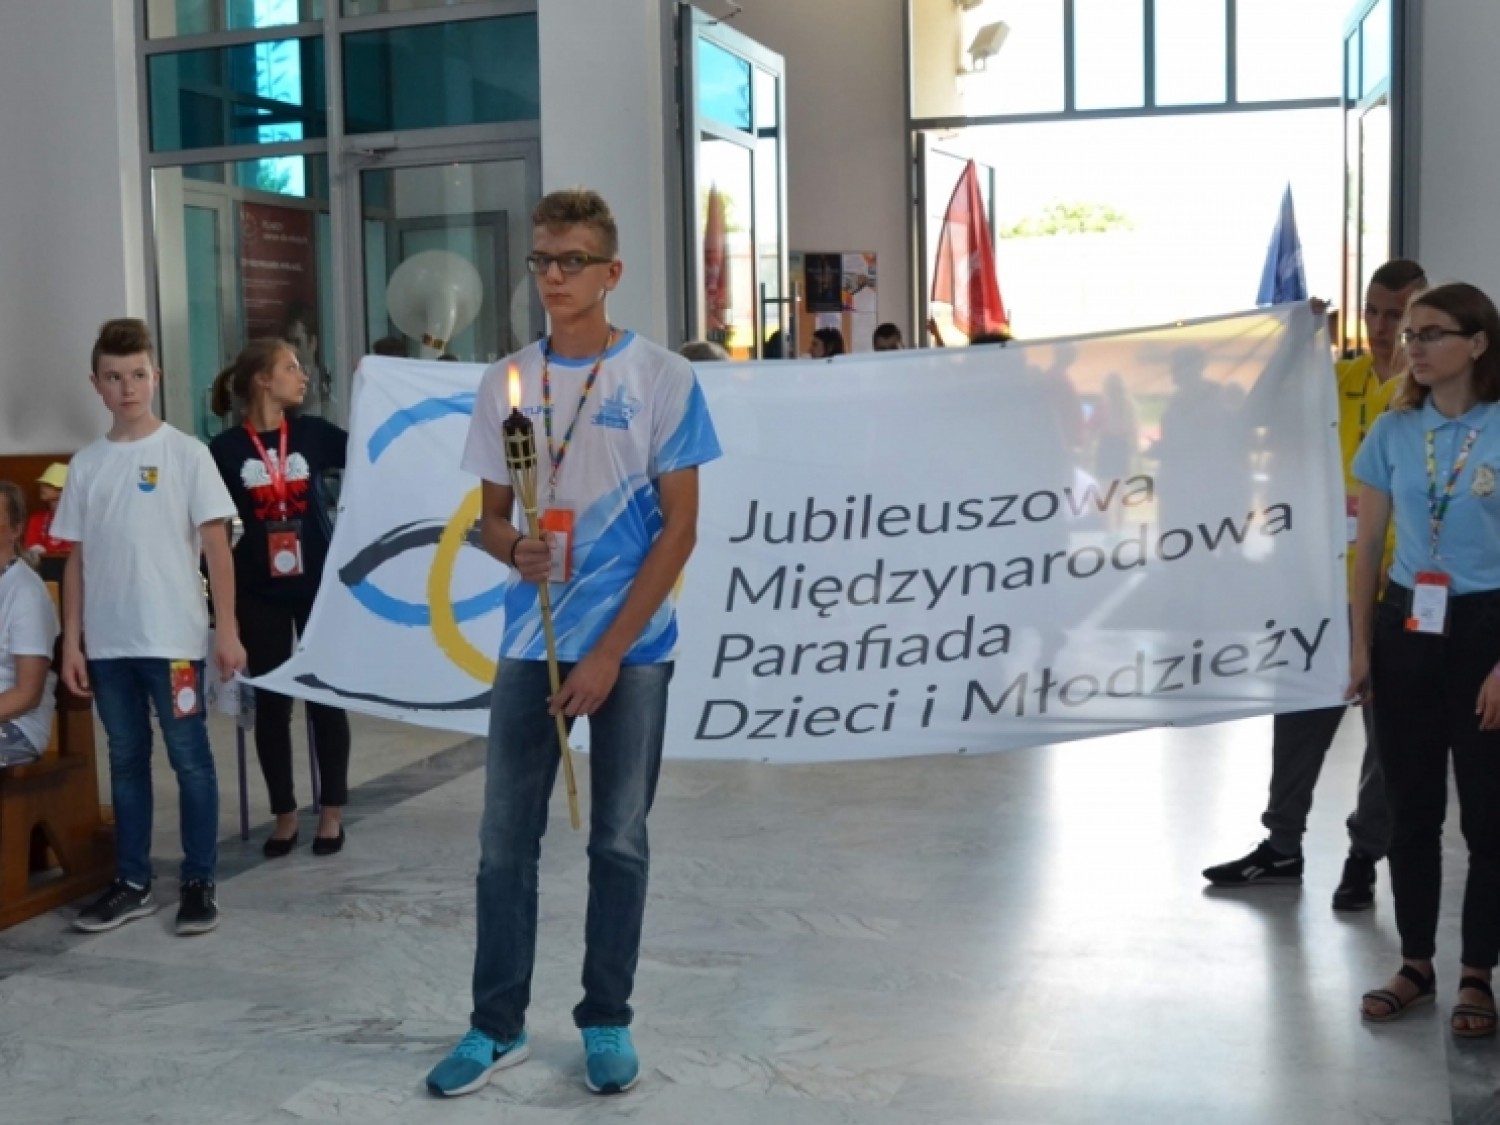 W Warszawie rozpoczęła się 30. Jubileuszowa Międzynarodowa Parafiada Dzieci i Młodzieży